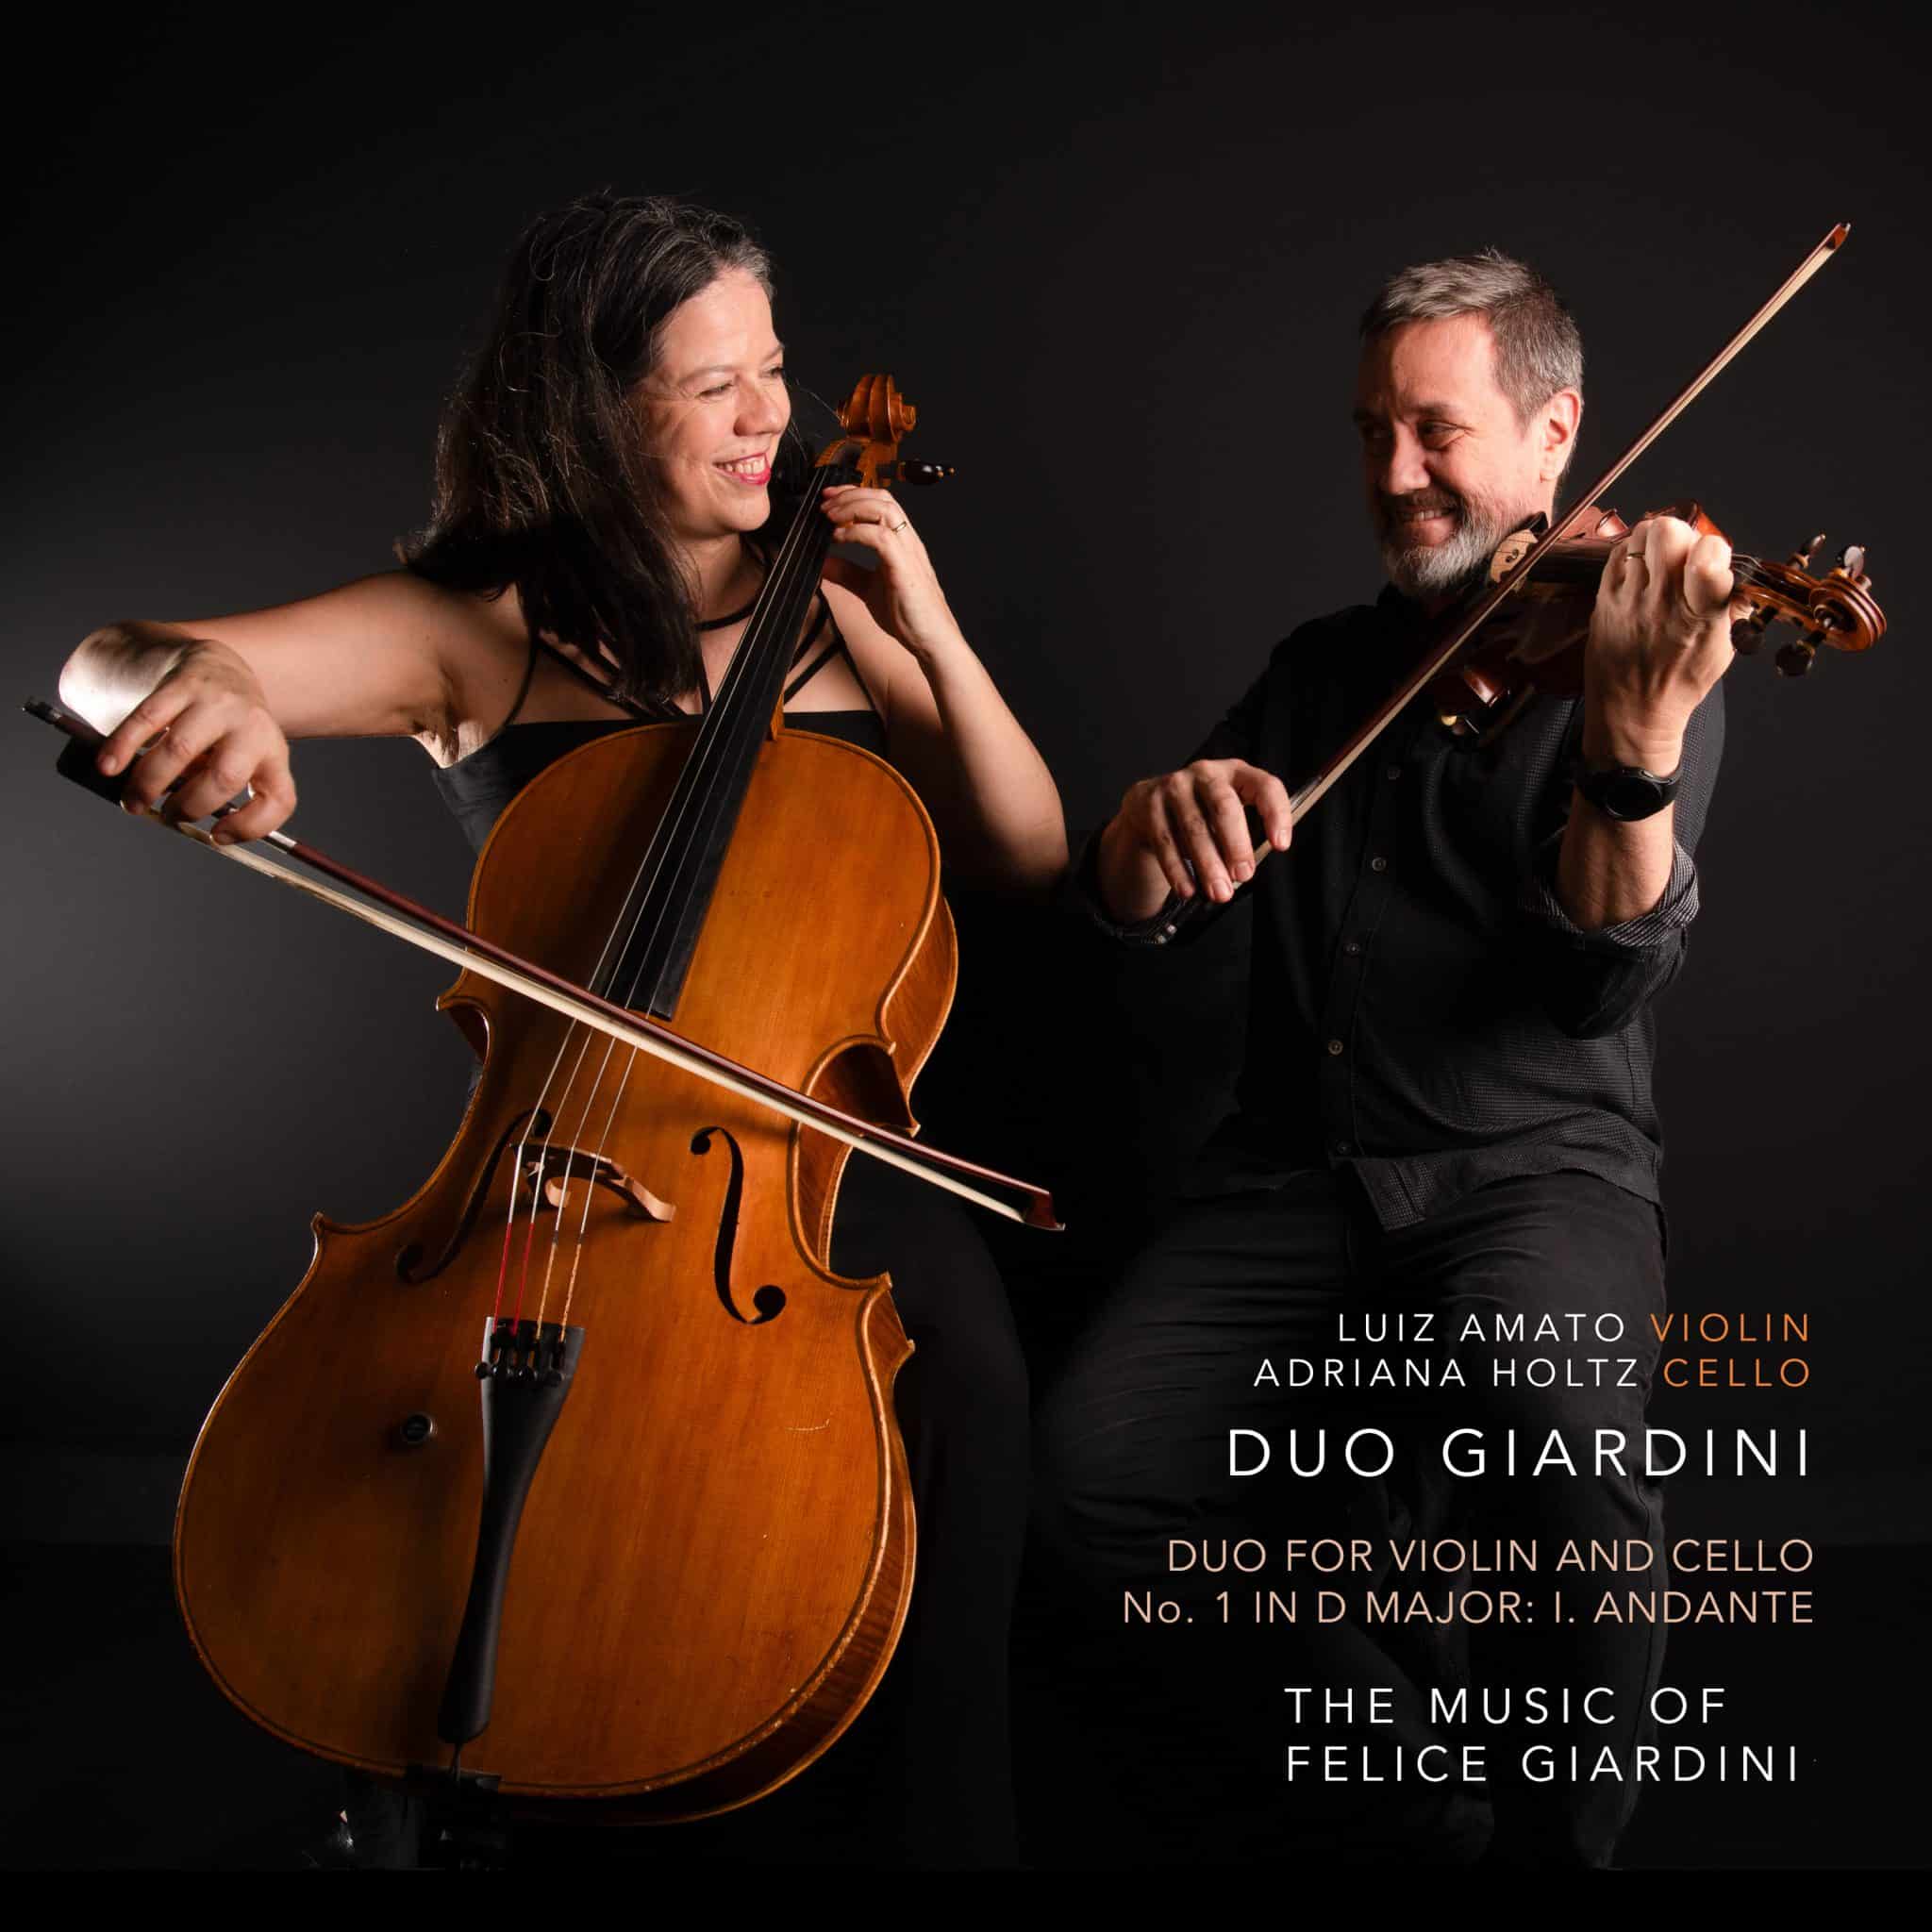 revistaprosaversoearte.com - Duo for Violin and Cello No. 1 in D Major: I. Andante | Duo Giardini